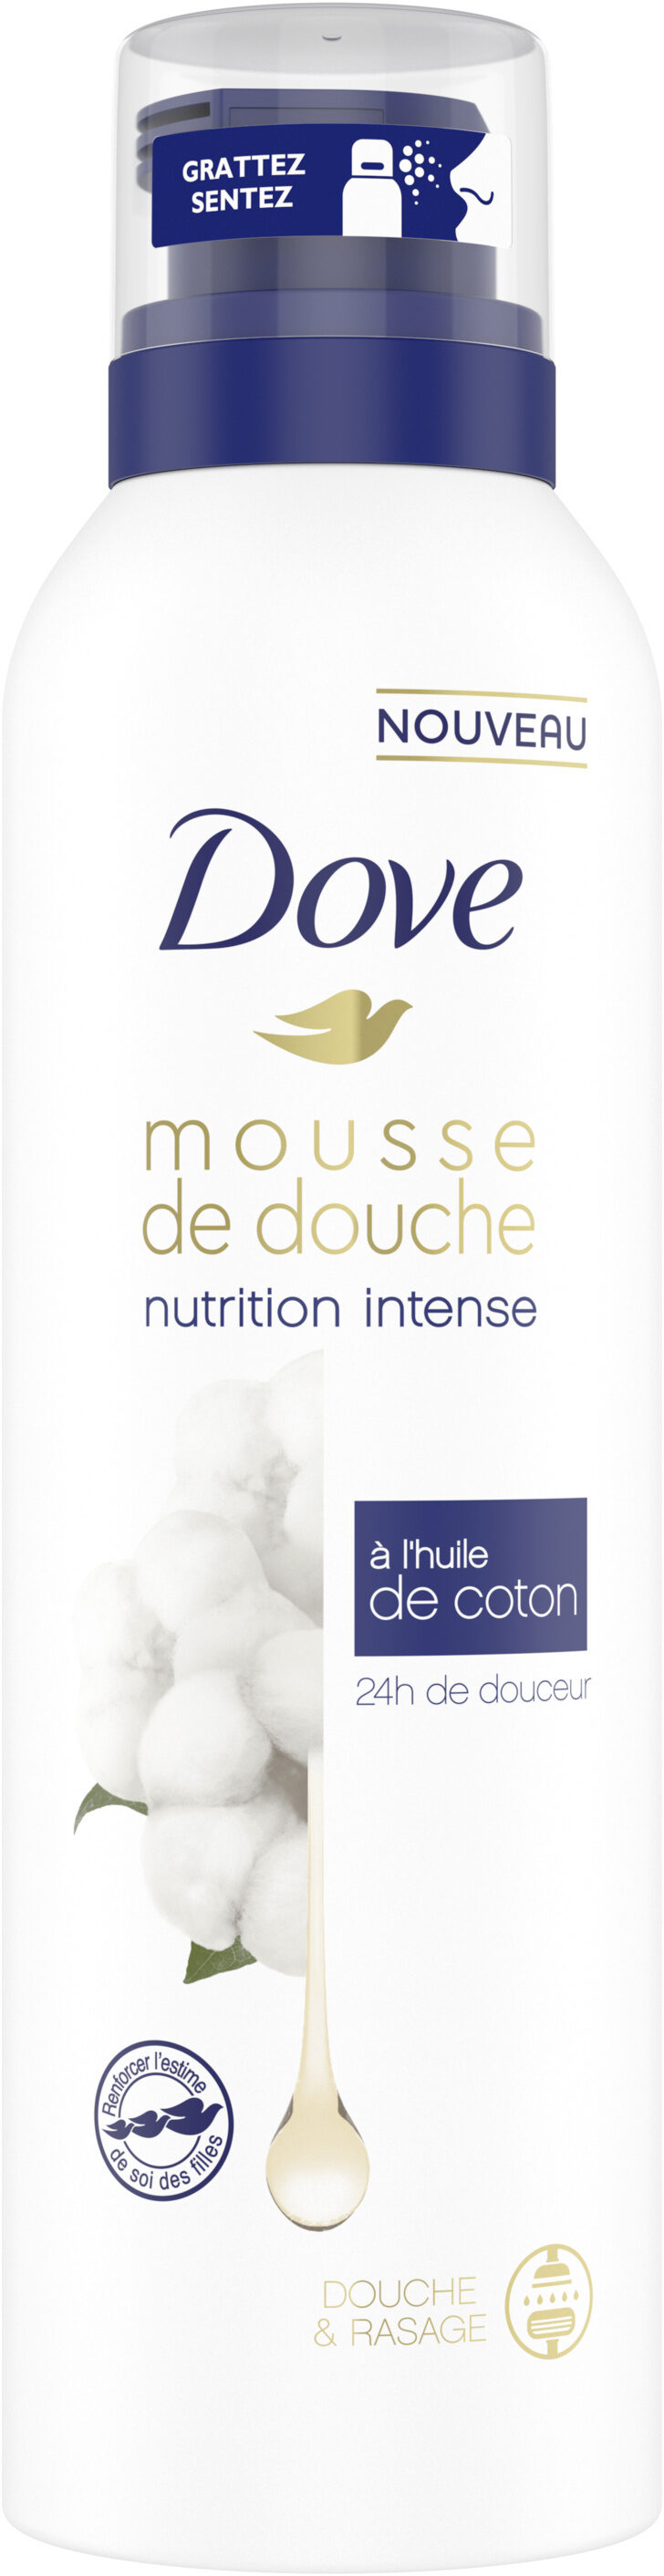 Dove Nutrition Intense Gel Douche Mousse à l'Huile de Coton 24h de Douceur Douche & Rasage - Produit - fr